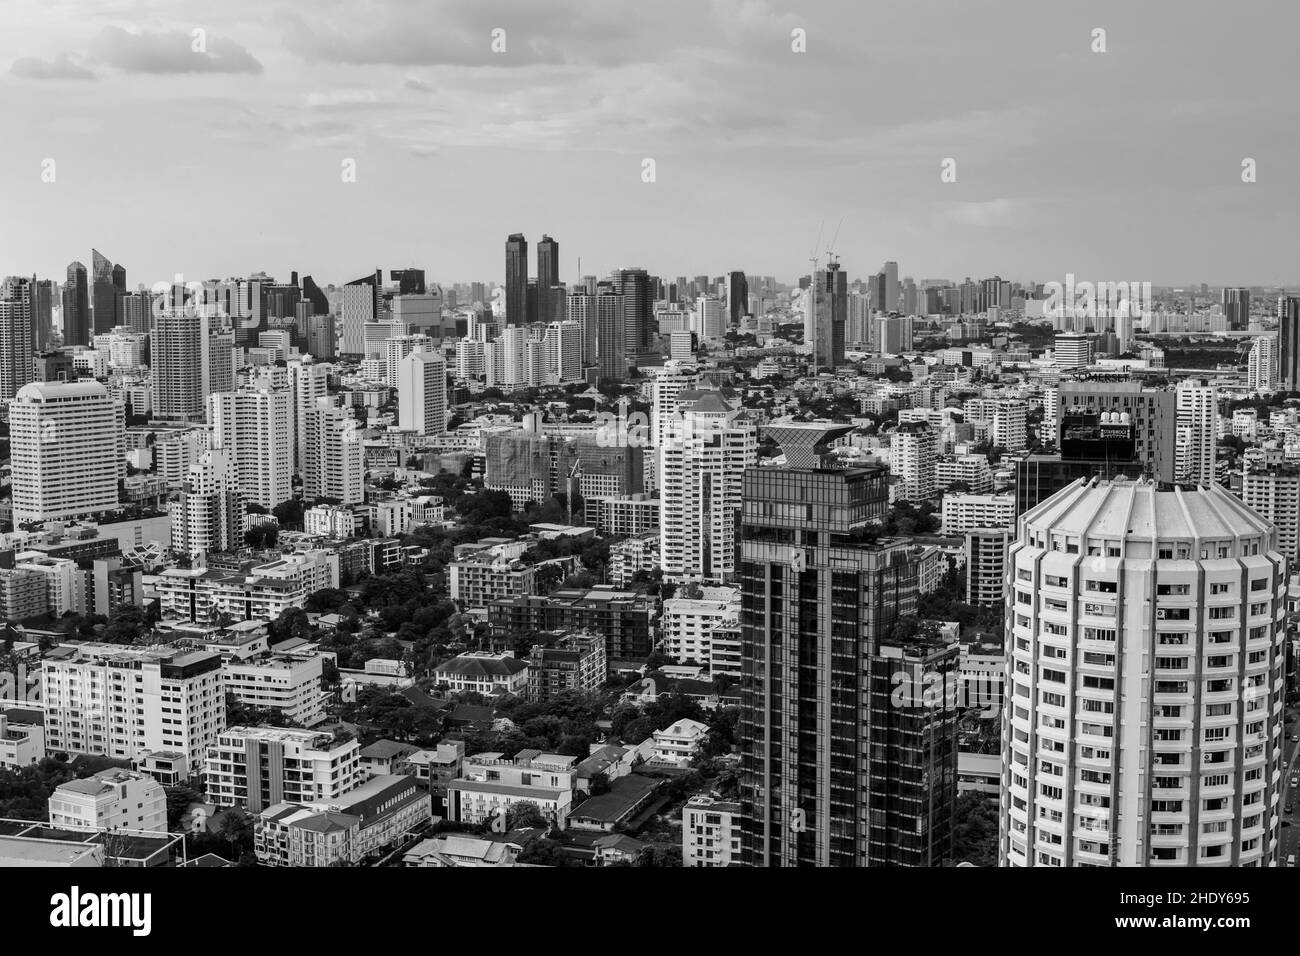 Le paysage urbain de Bangkok Thaïlande Asie du Sud-est Banque D'Images